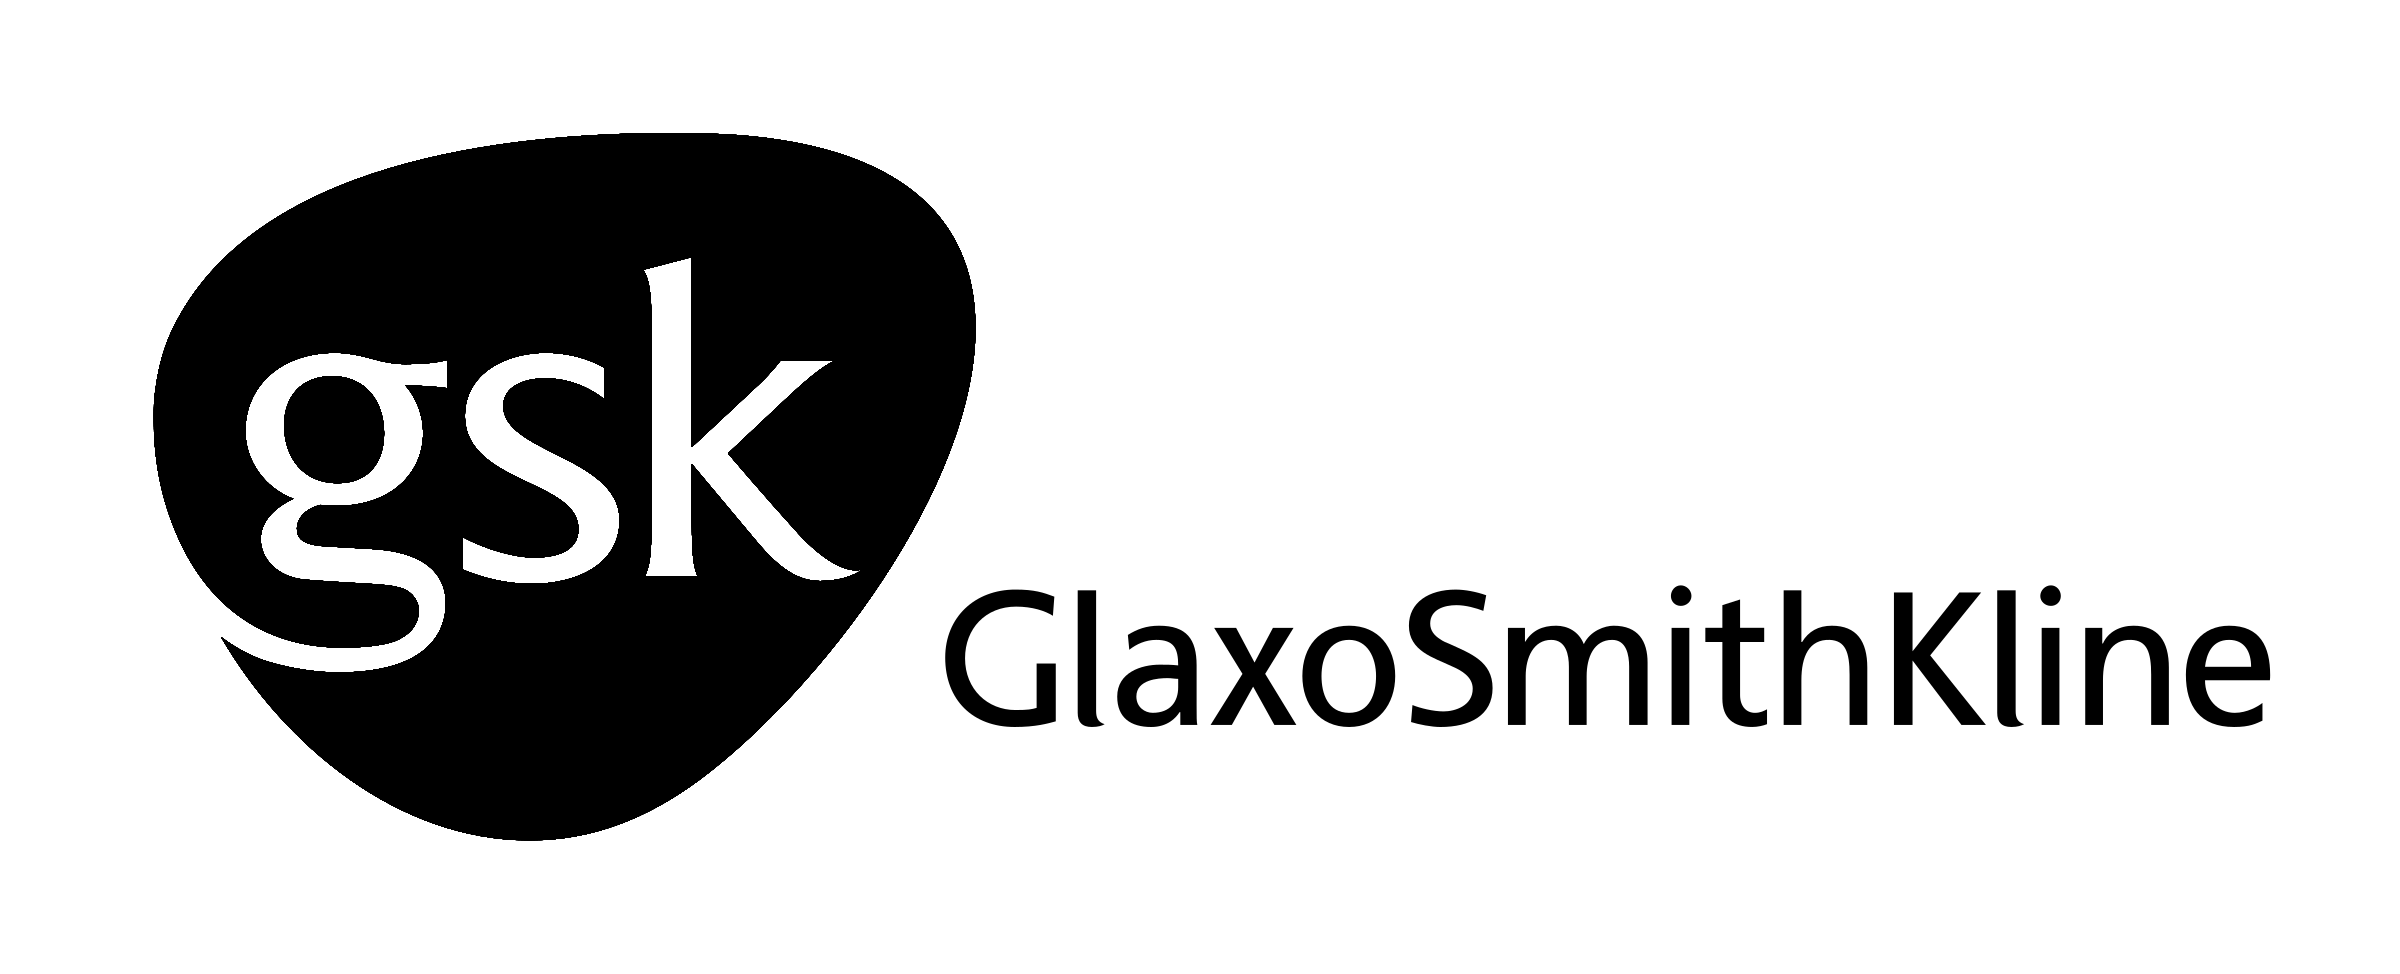 glaxosmithkline-logo-black-and-white